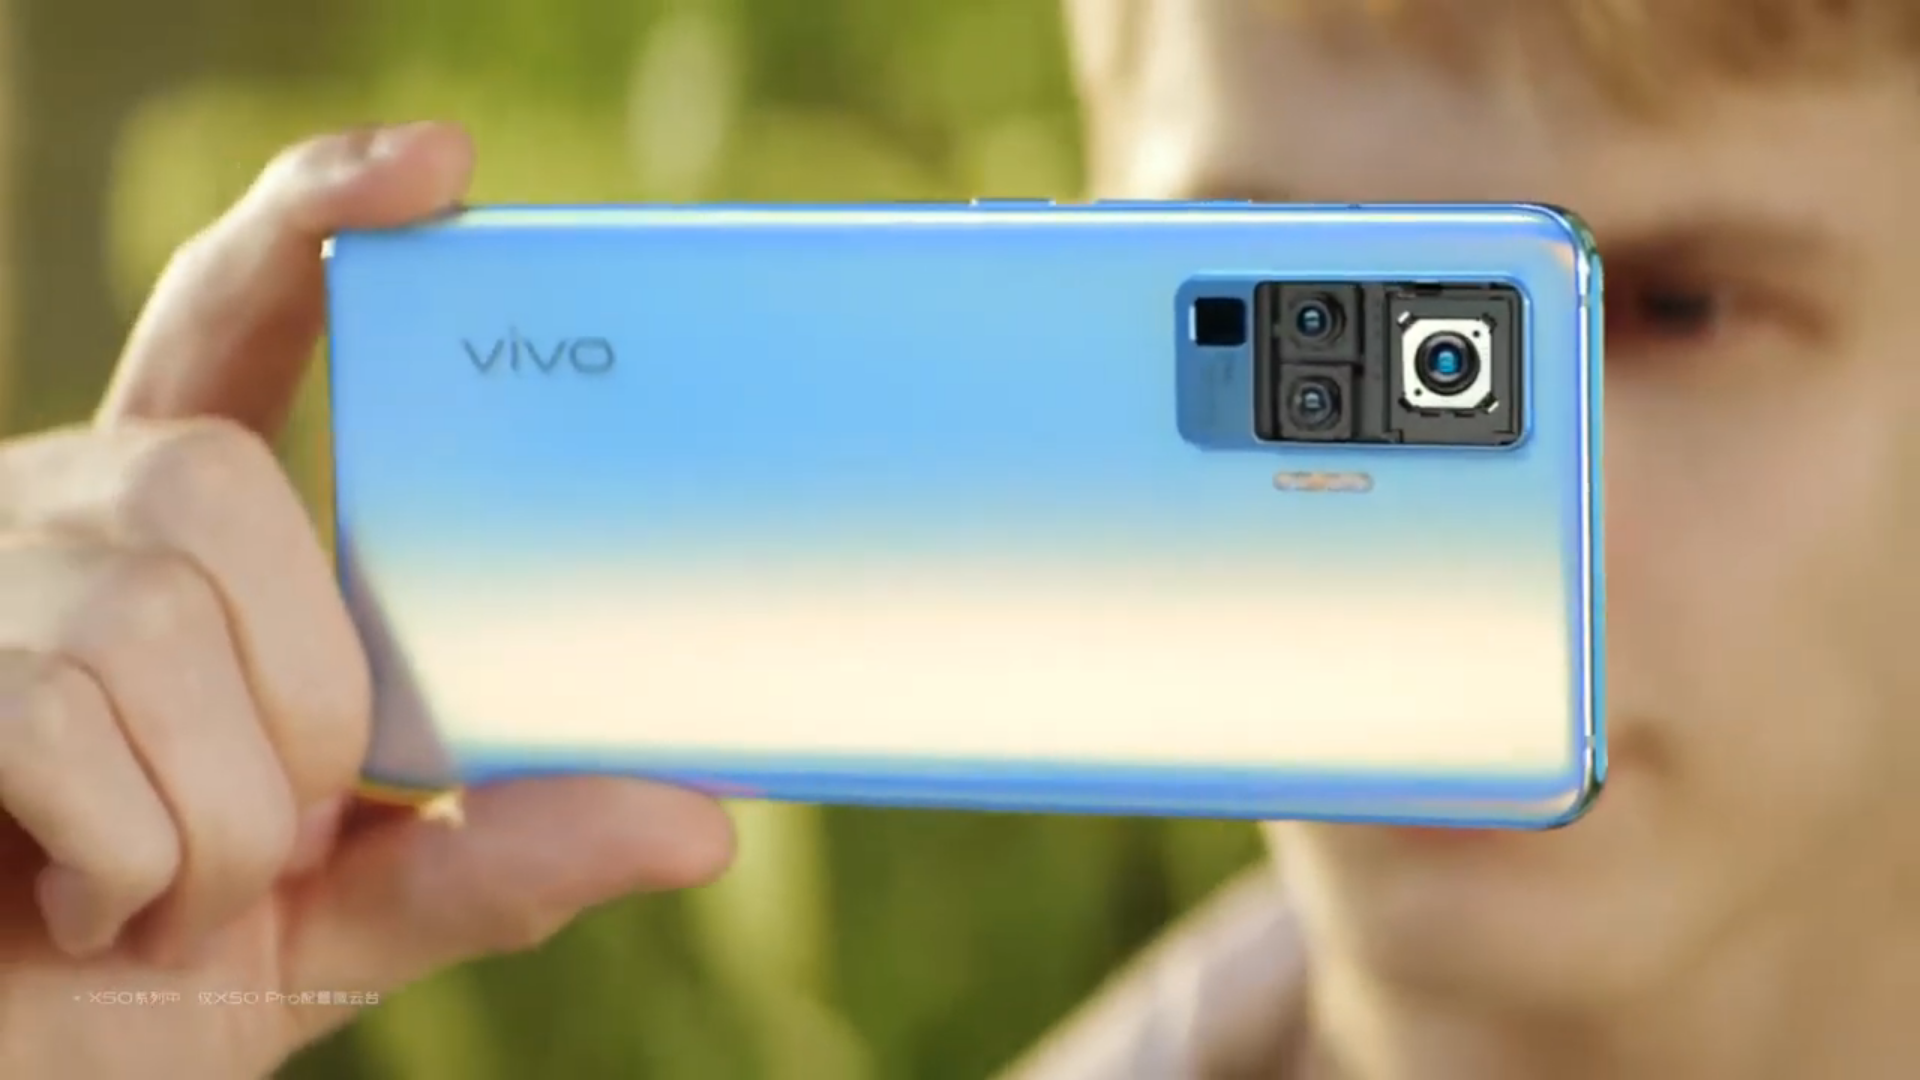 Lộ diện video teaser của vivo X50 Pro với camera có hệ thống chống rung giống gimbal